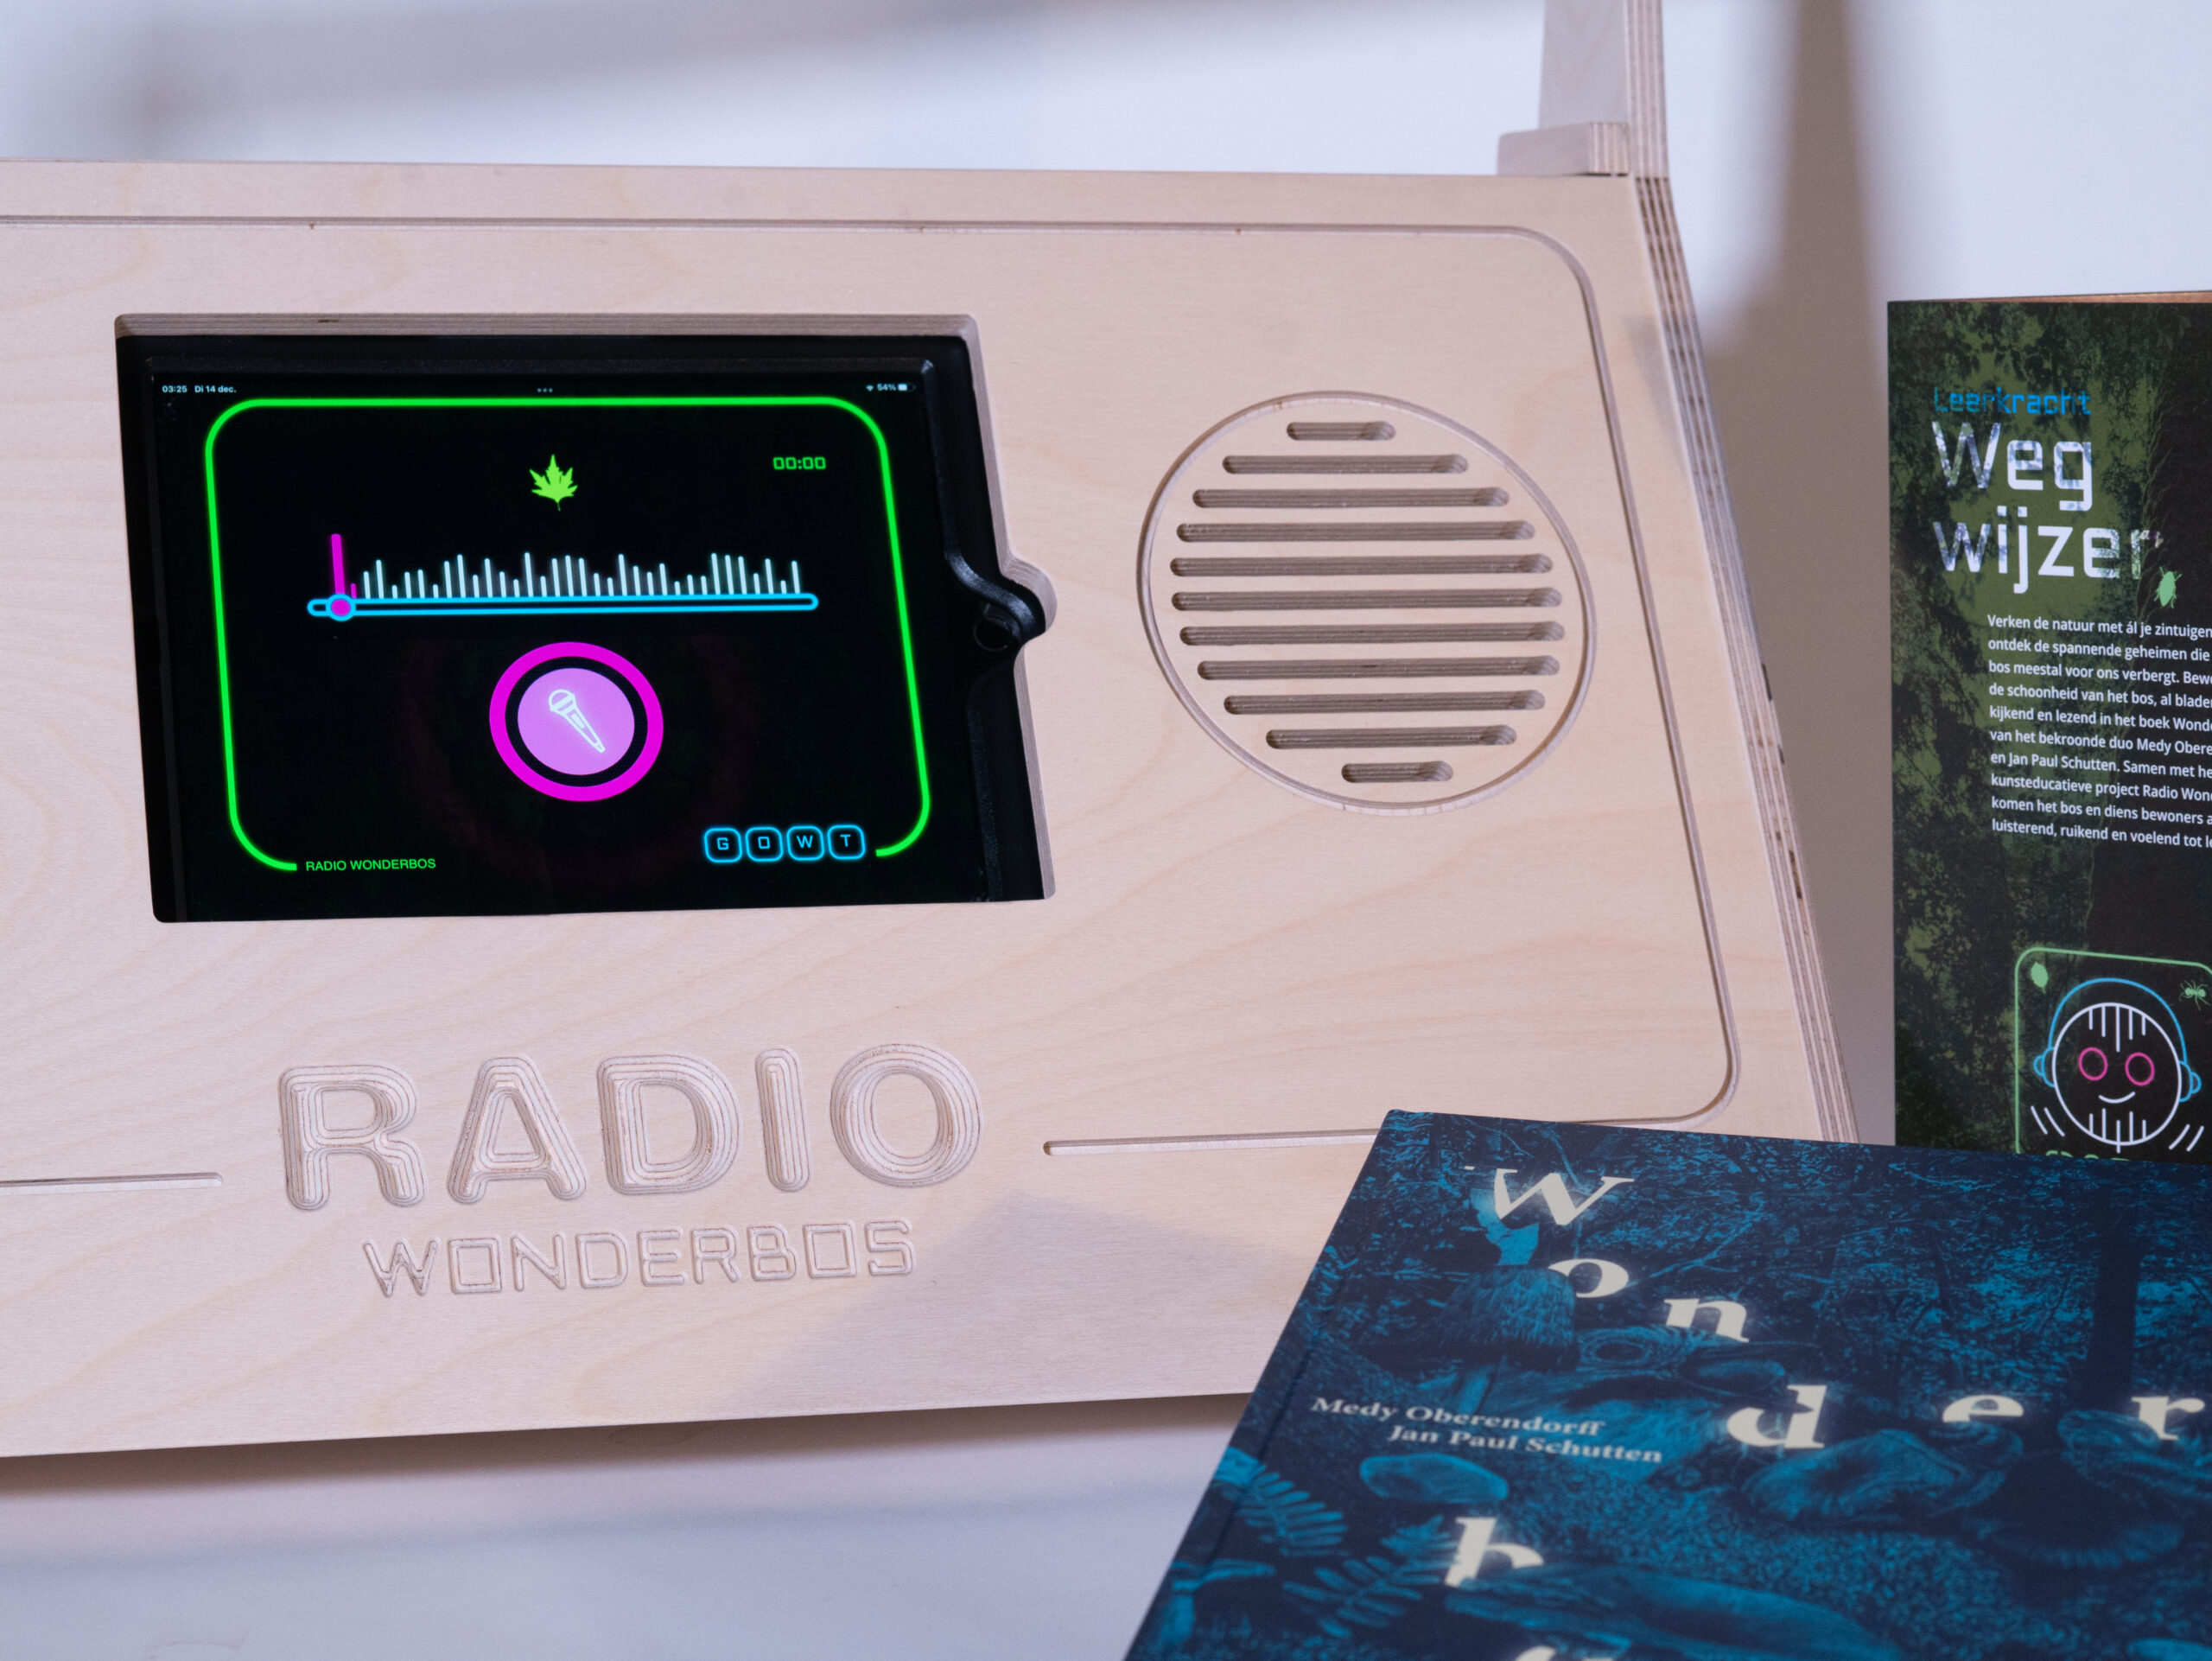 Radio Wonderbos